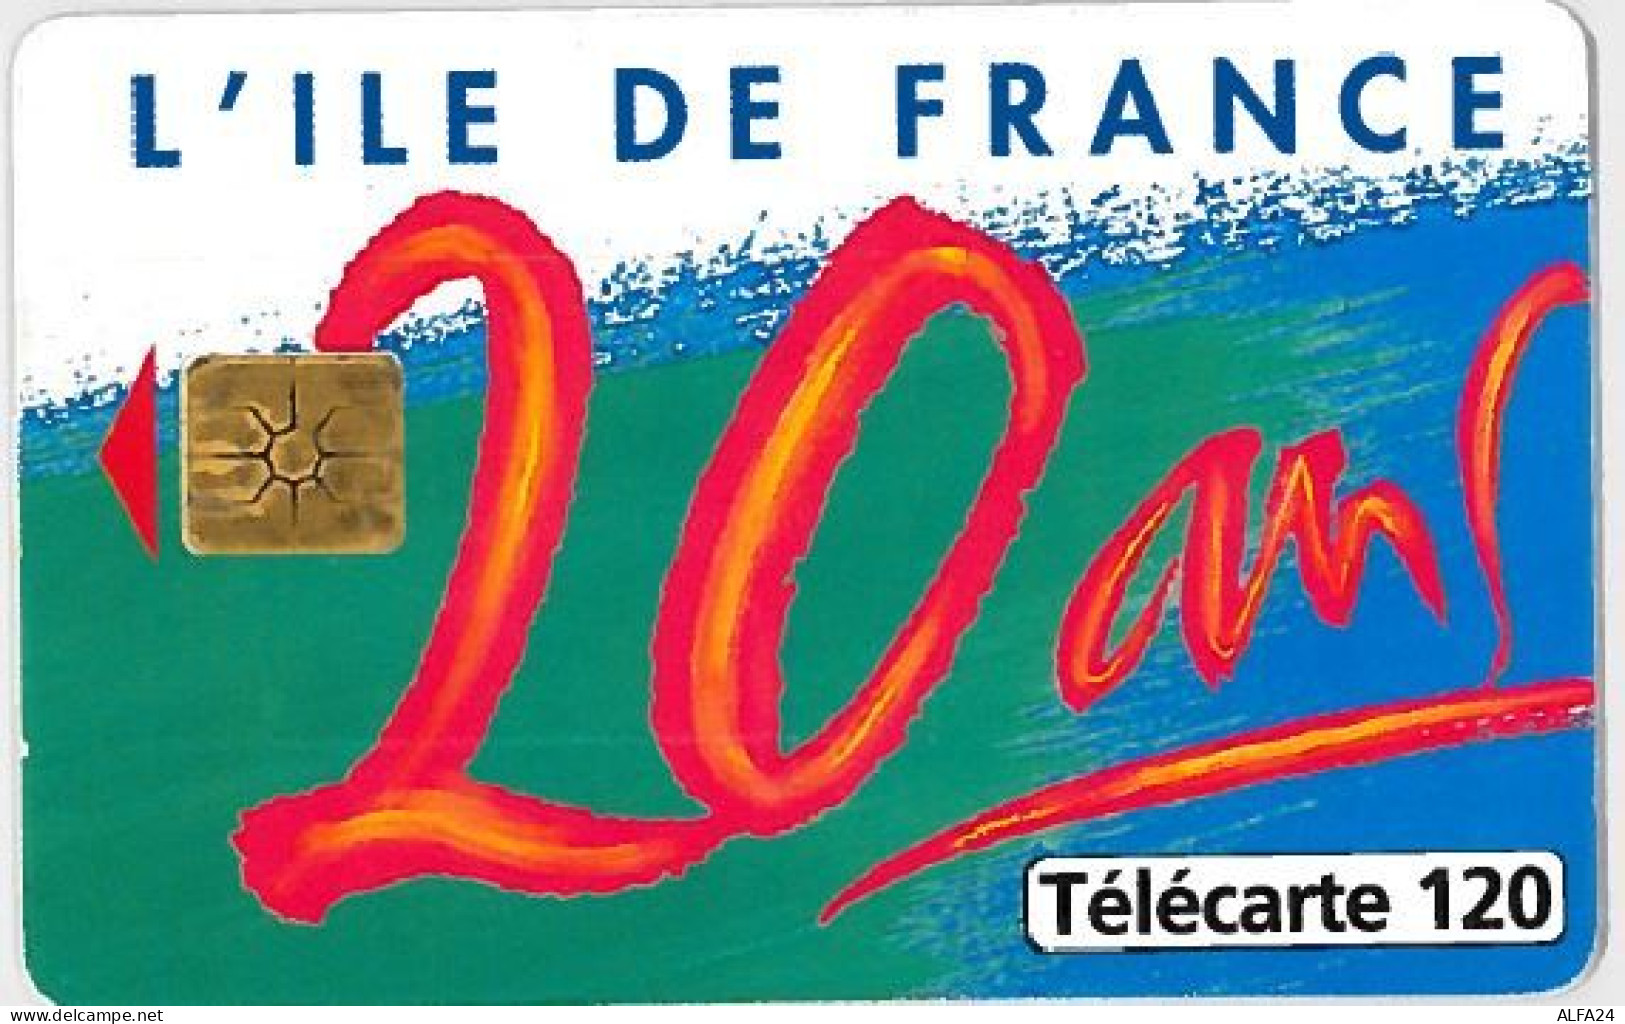 TELECARTE F644 ILE DE FRANCE - 1996